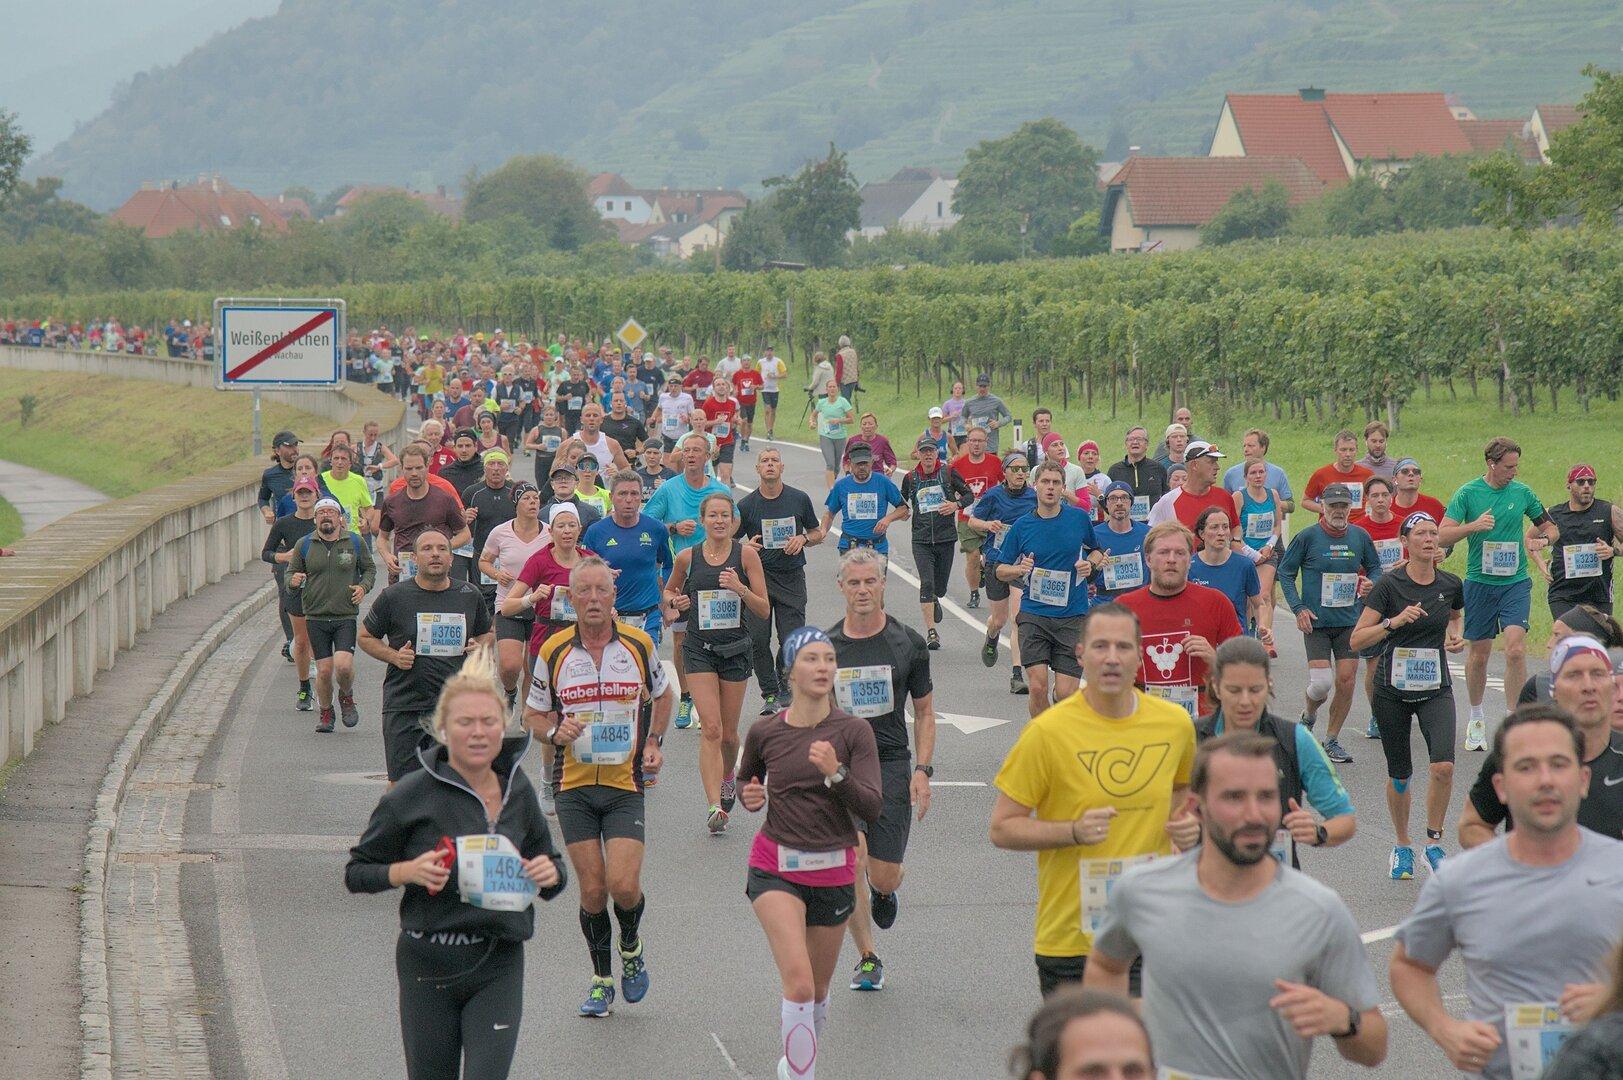 Wachau Marathon heuer zum 25. Mal mit erweitertem Rahmenprogramm